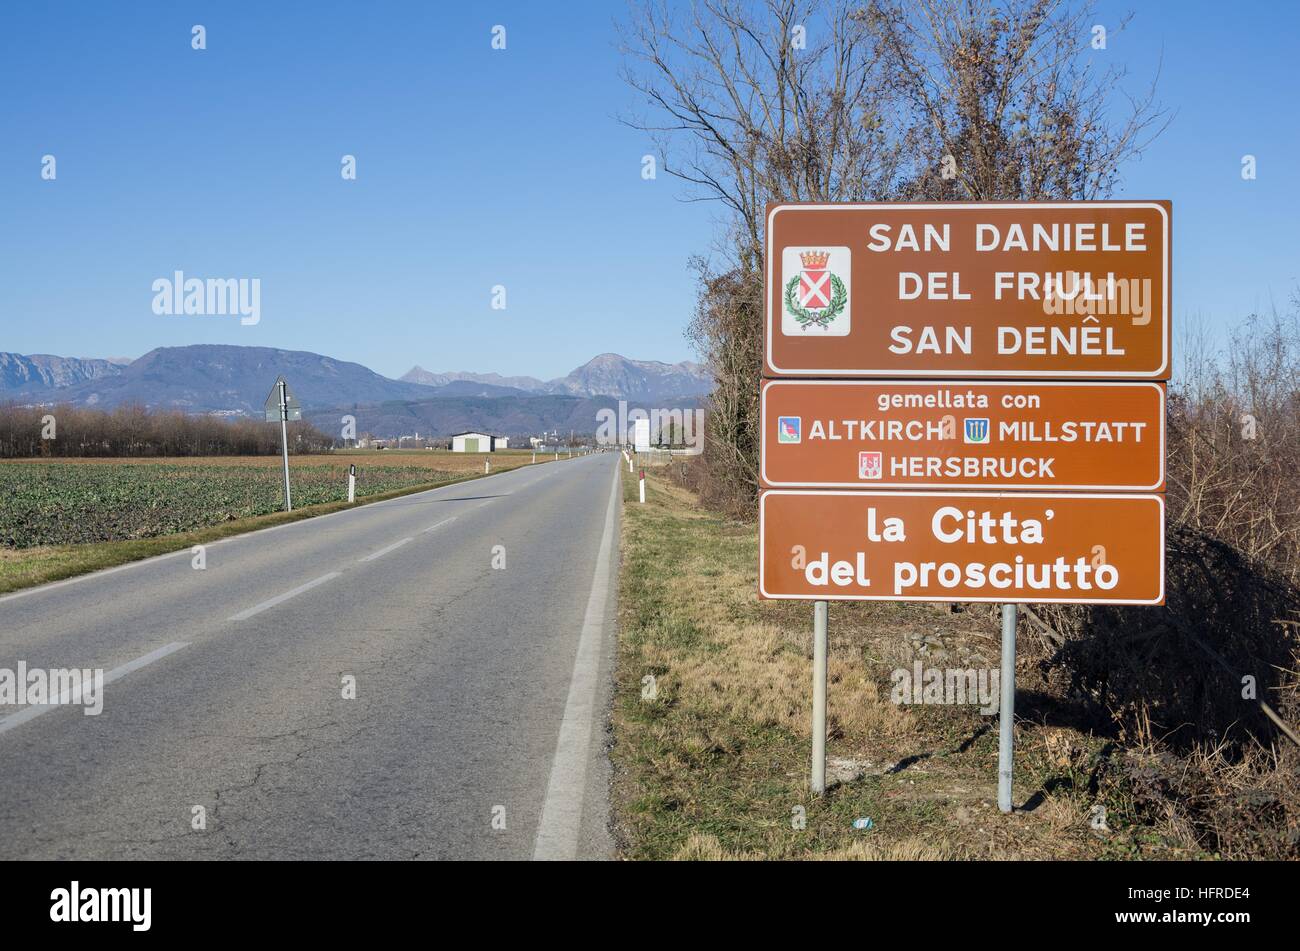 Road sign of San Daniele del Friuli, 'the town of the ham' ('La città del prosciutto') Stock Photo